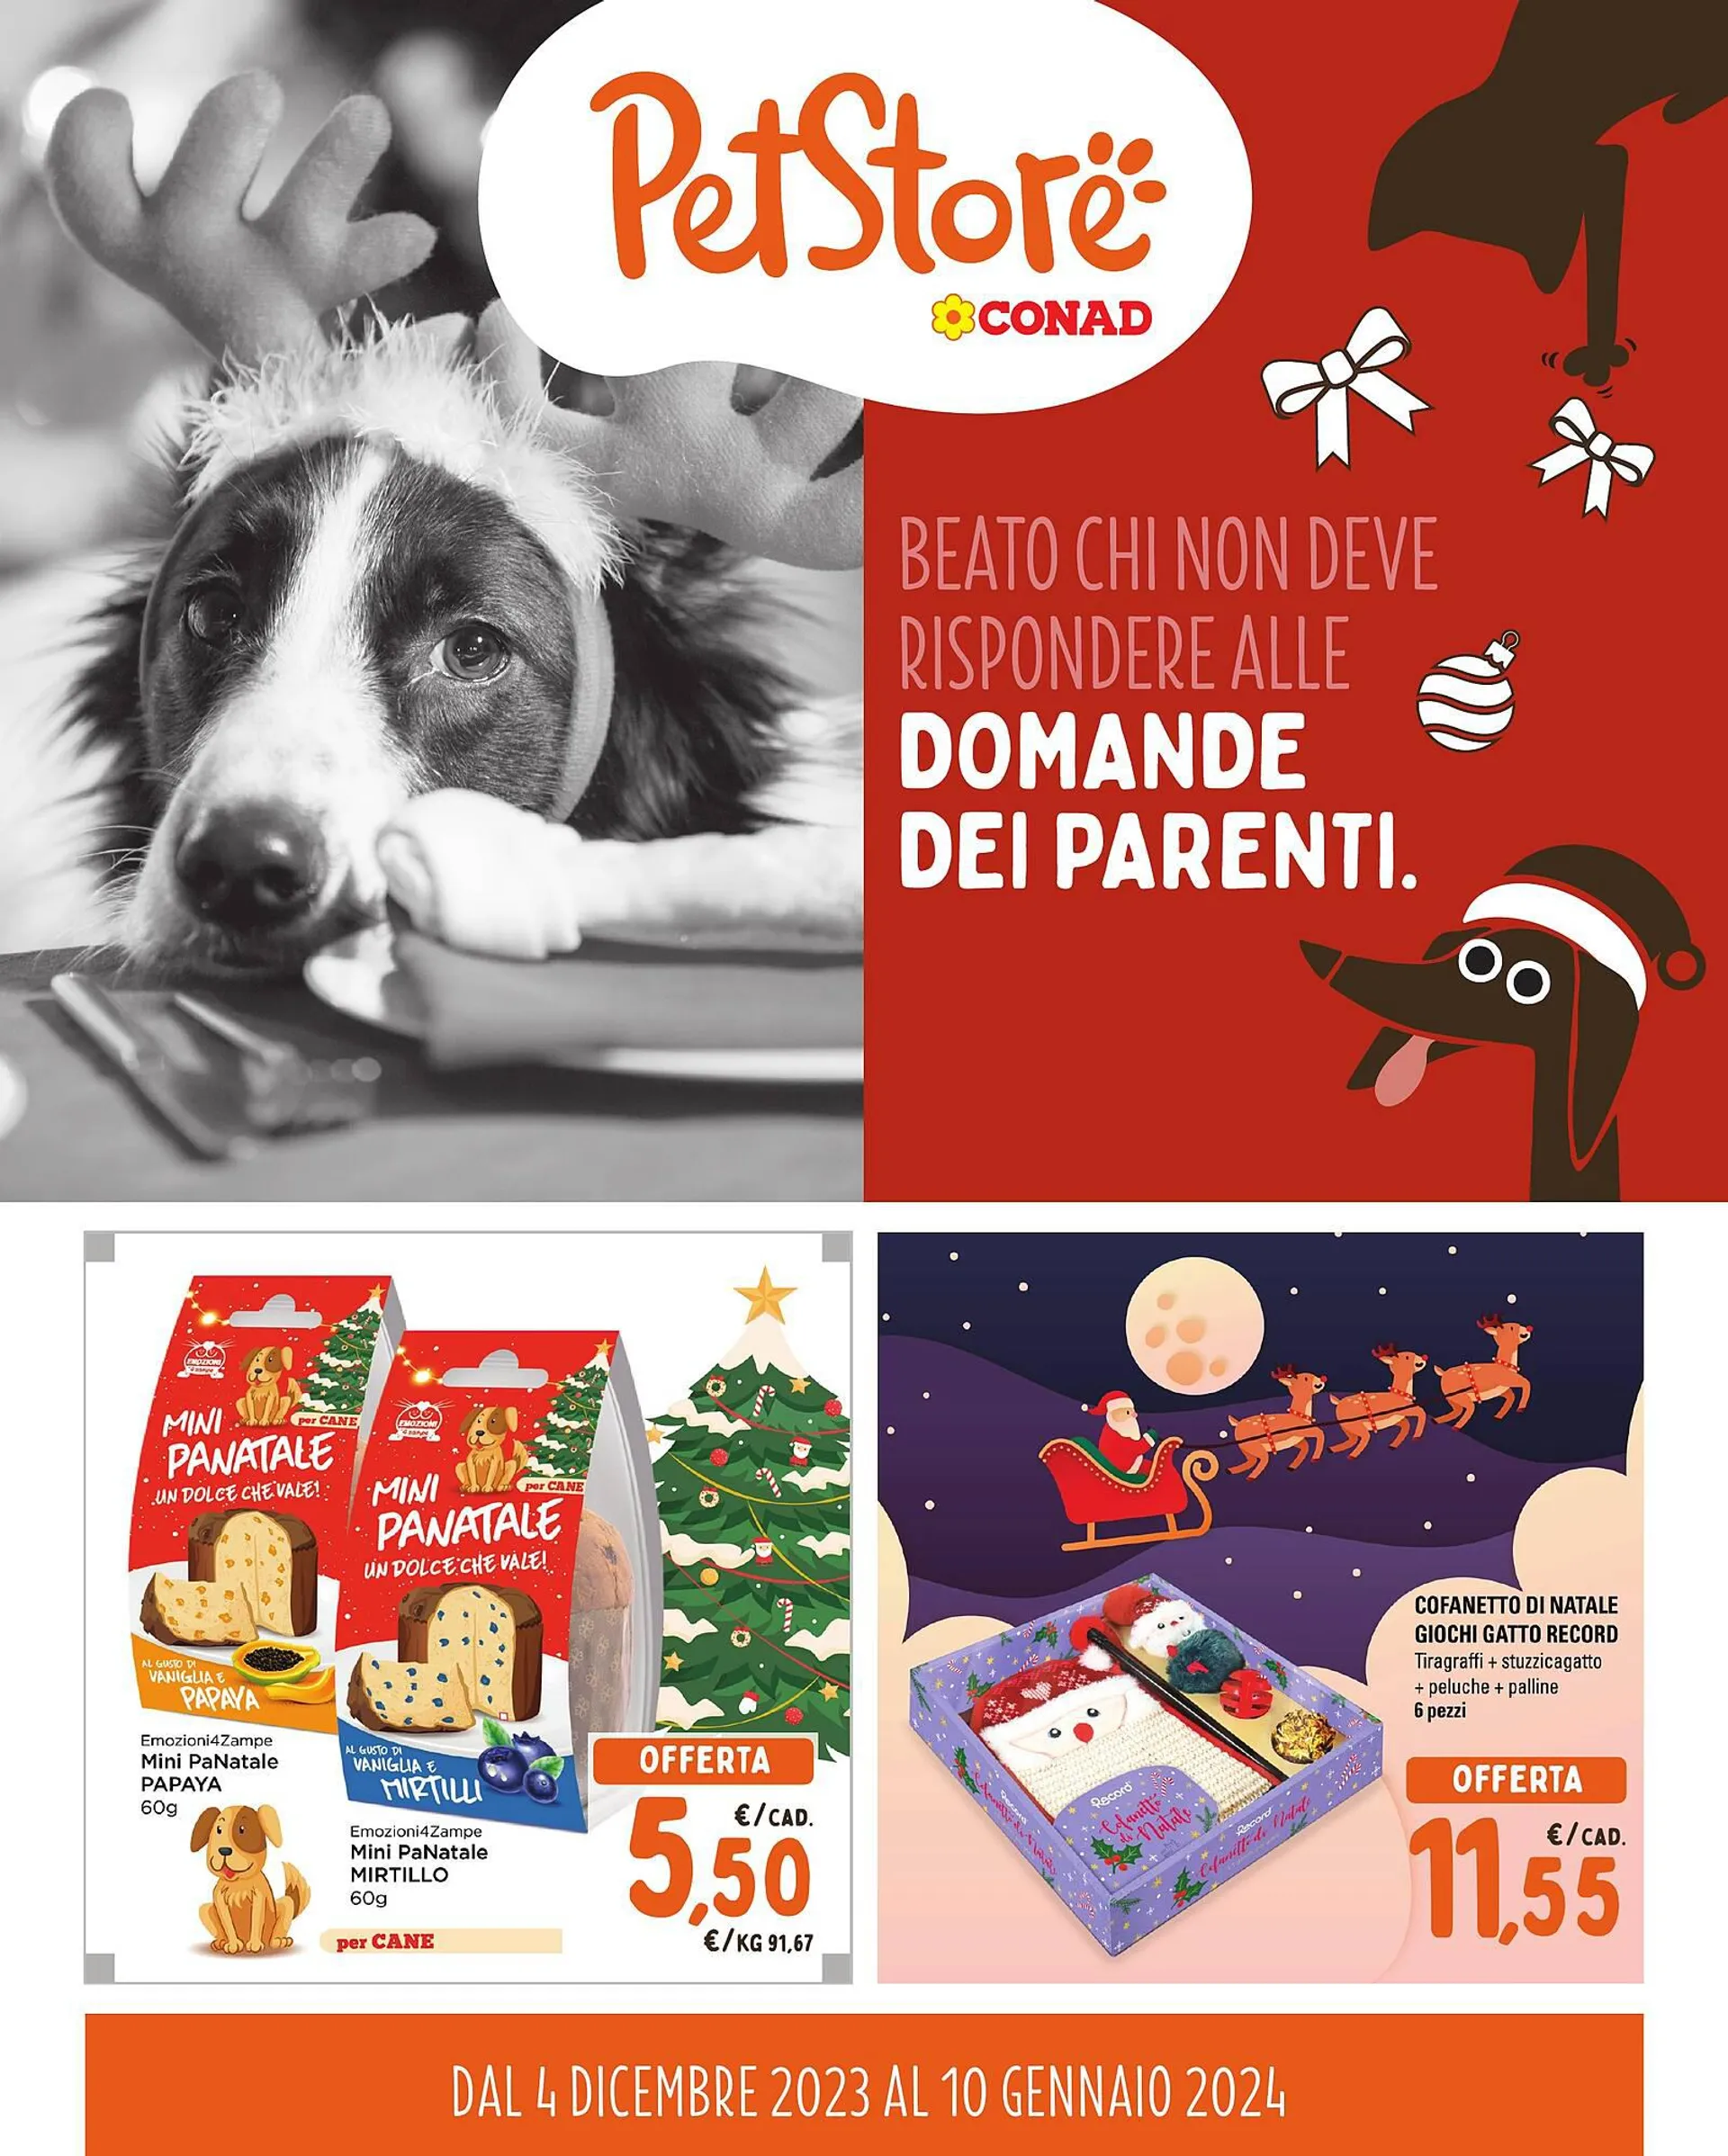 Volantino Pet Store Conad da 4 dicembre a 9 gennaio di 2024 - Pagina del volantino 